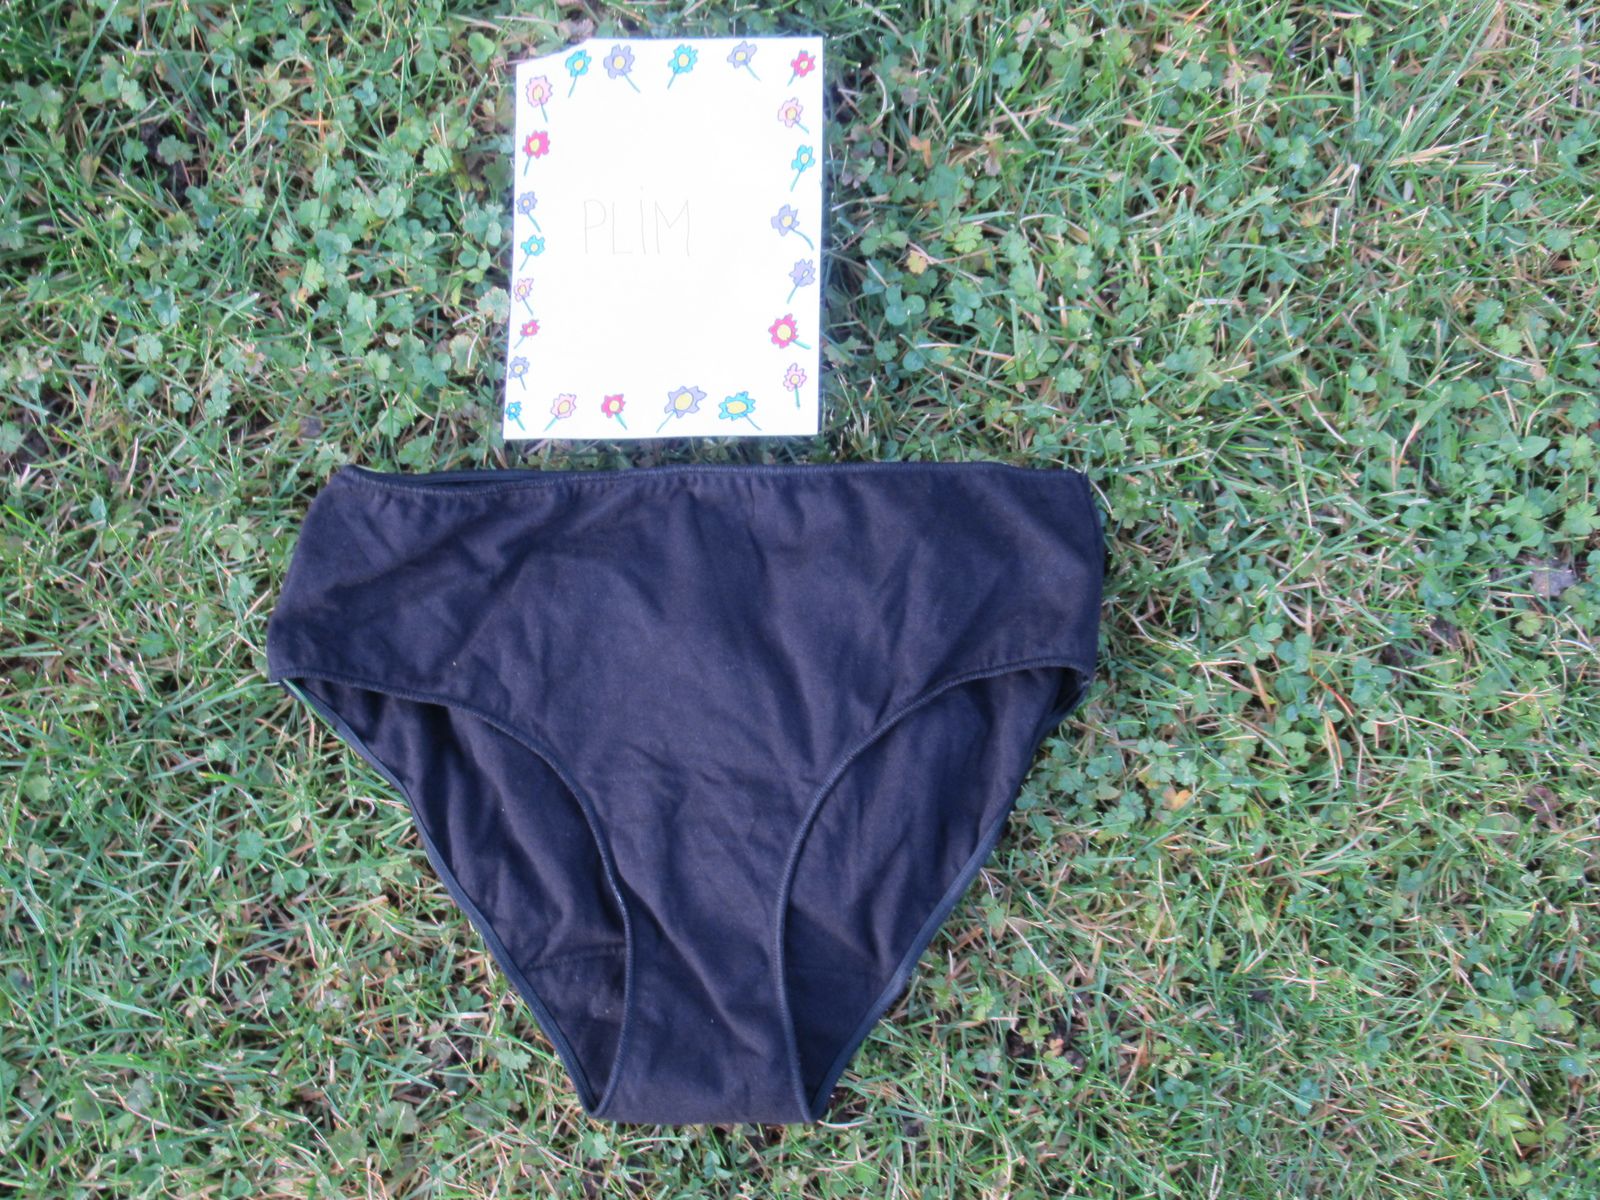 Choisir sa culotte menstruelle pour les règles - LE BLOG DE MAMAN NOUNOU